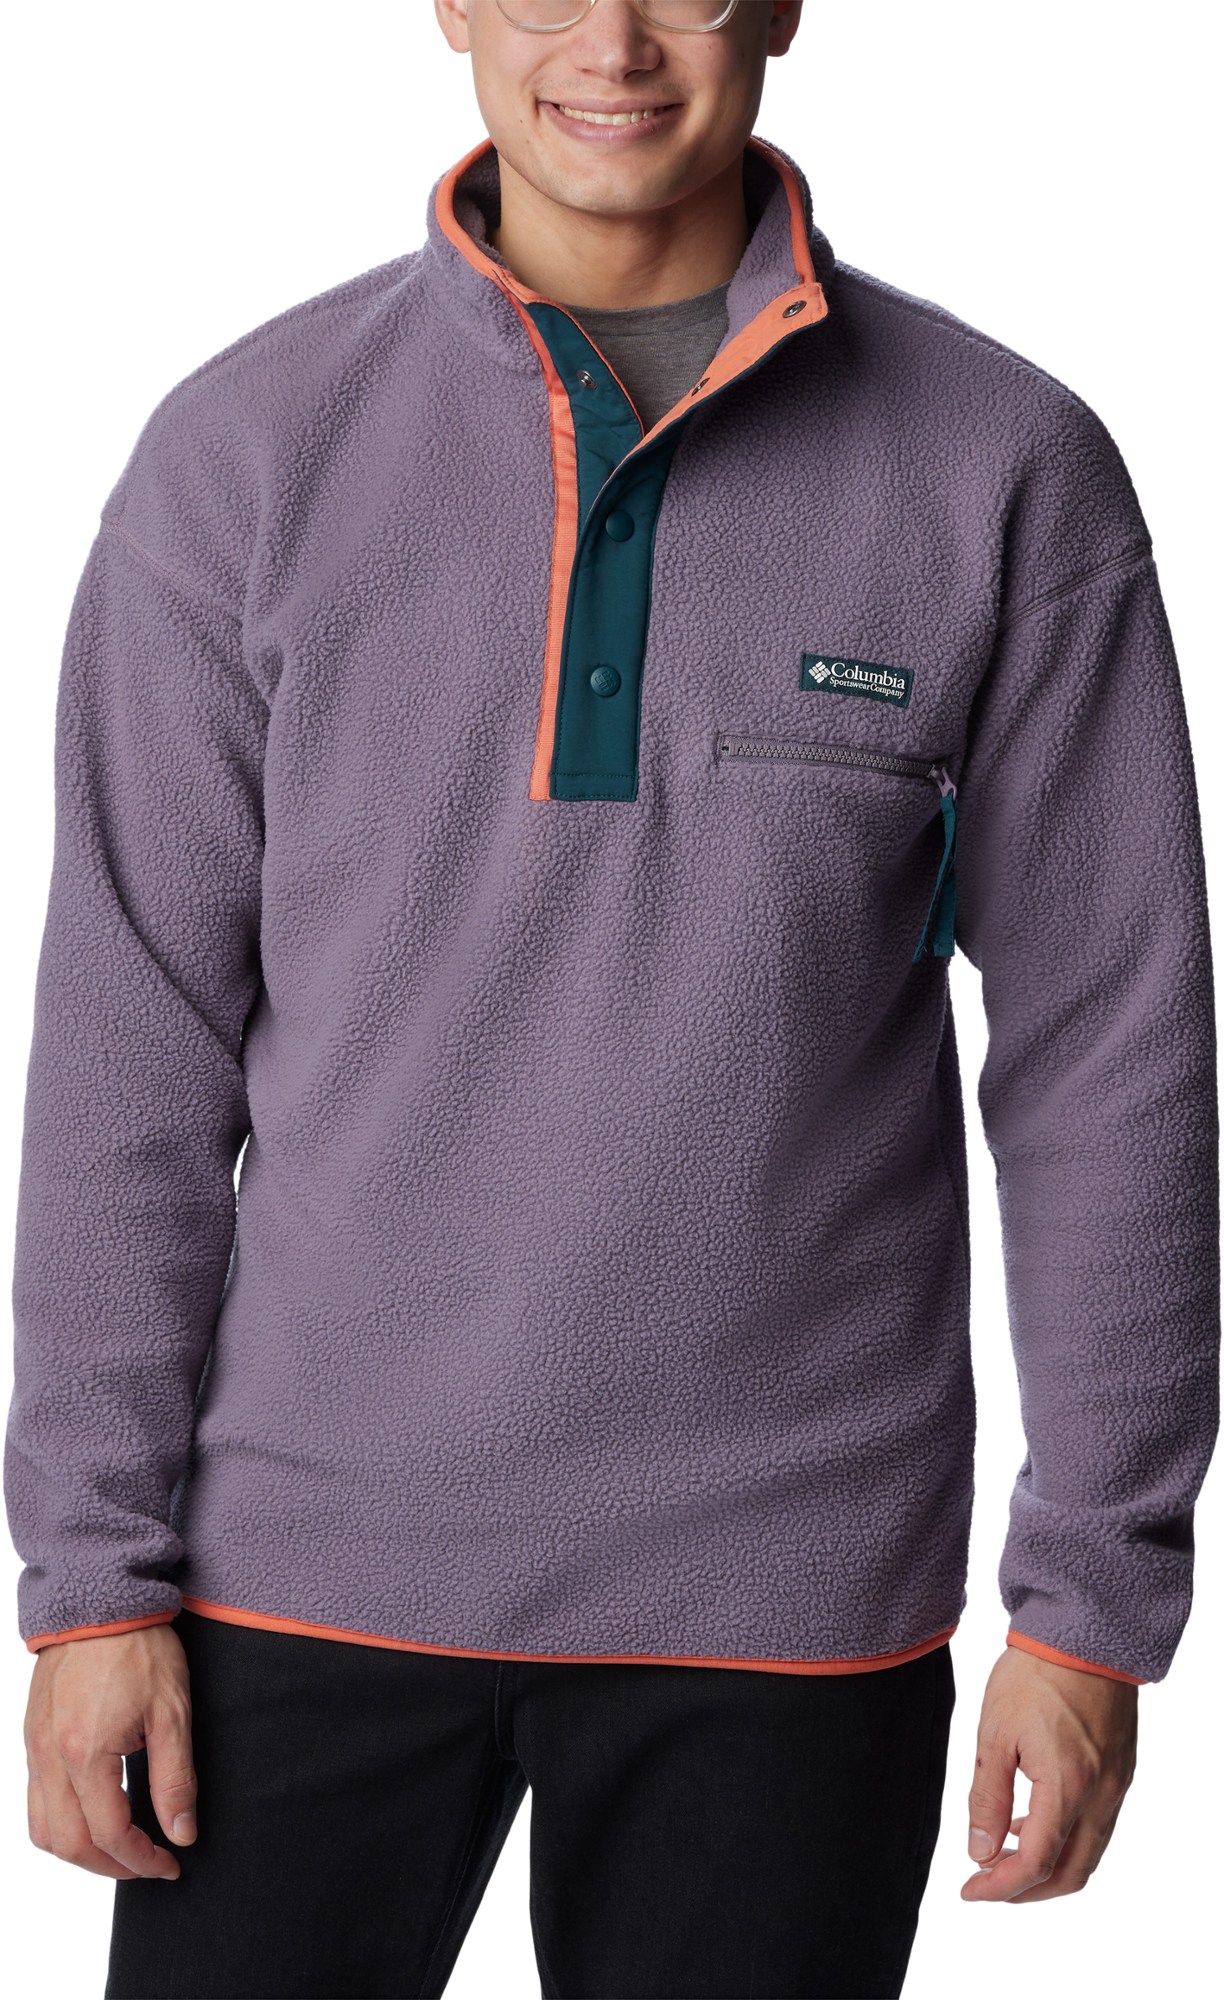 Флисовый пуловер Helvetia с полузастежкой - мужской Columbia, фиолетовый женский кашемировый пуловер ажурный пуловер в китайском ретро стиле с полувысоким воротником и дисковыми пуговицами осень зима